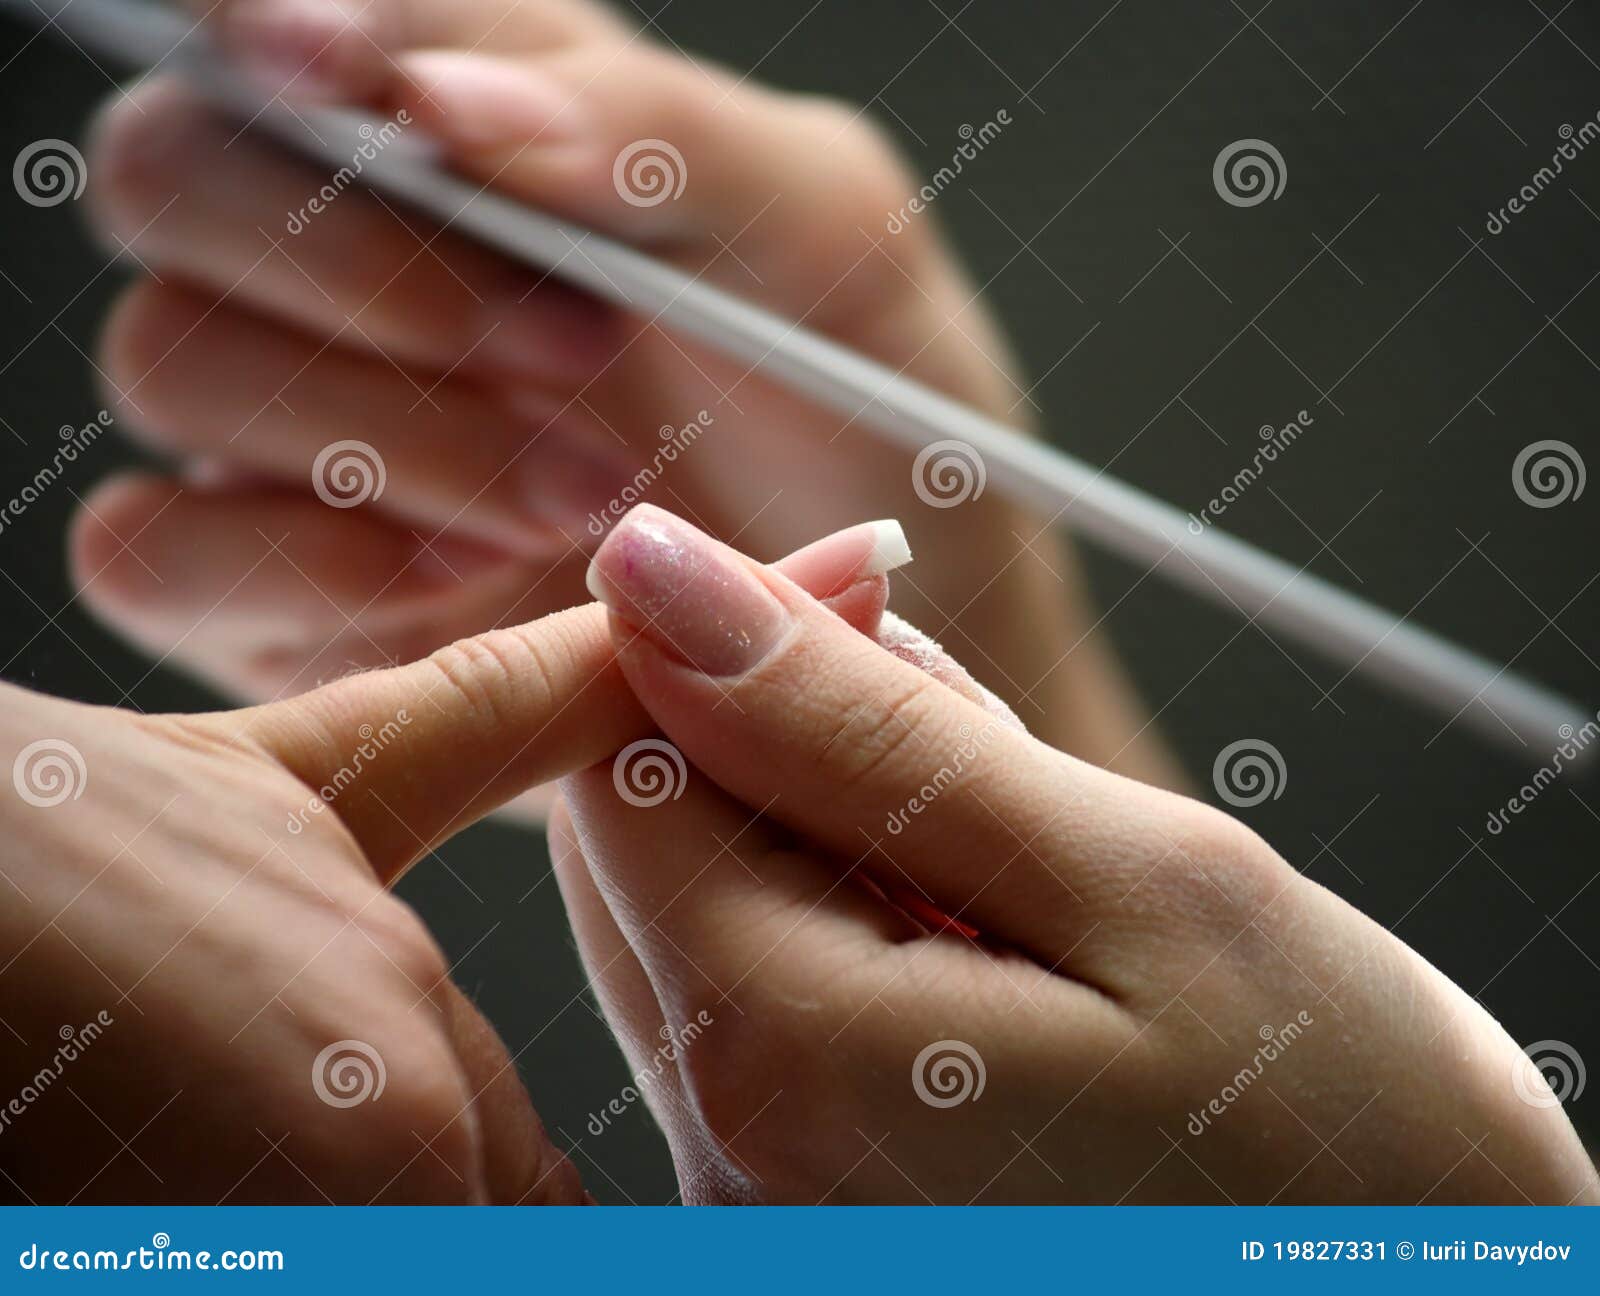 nail beautician polishing nails